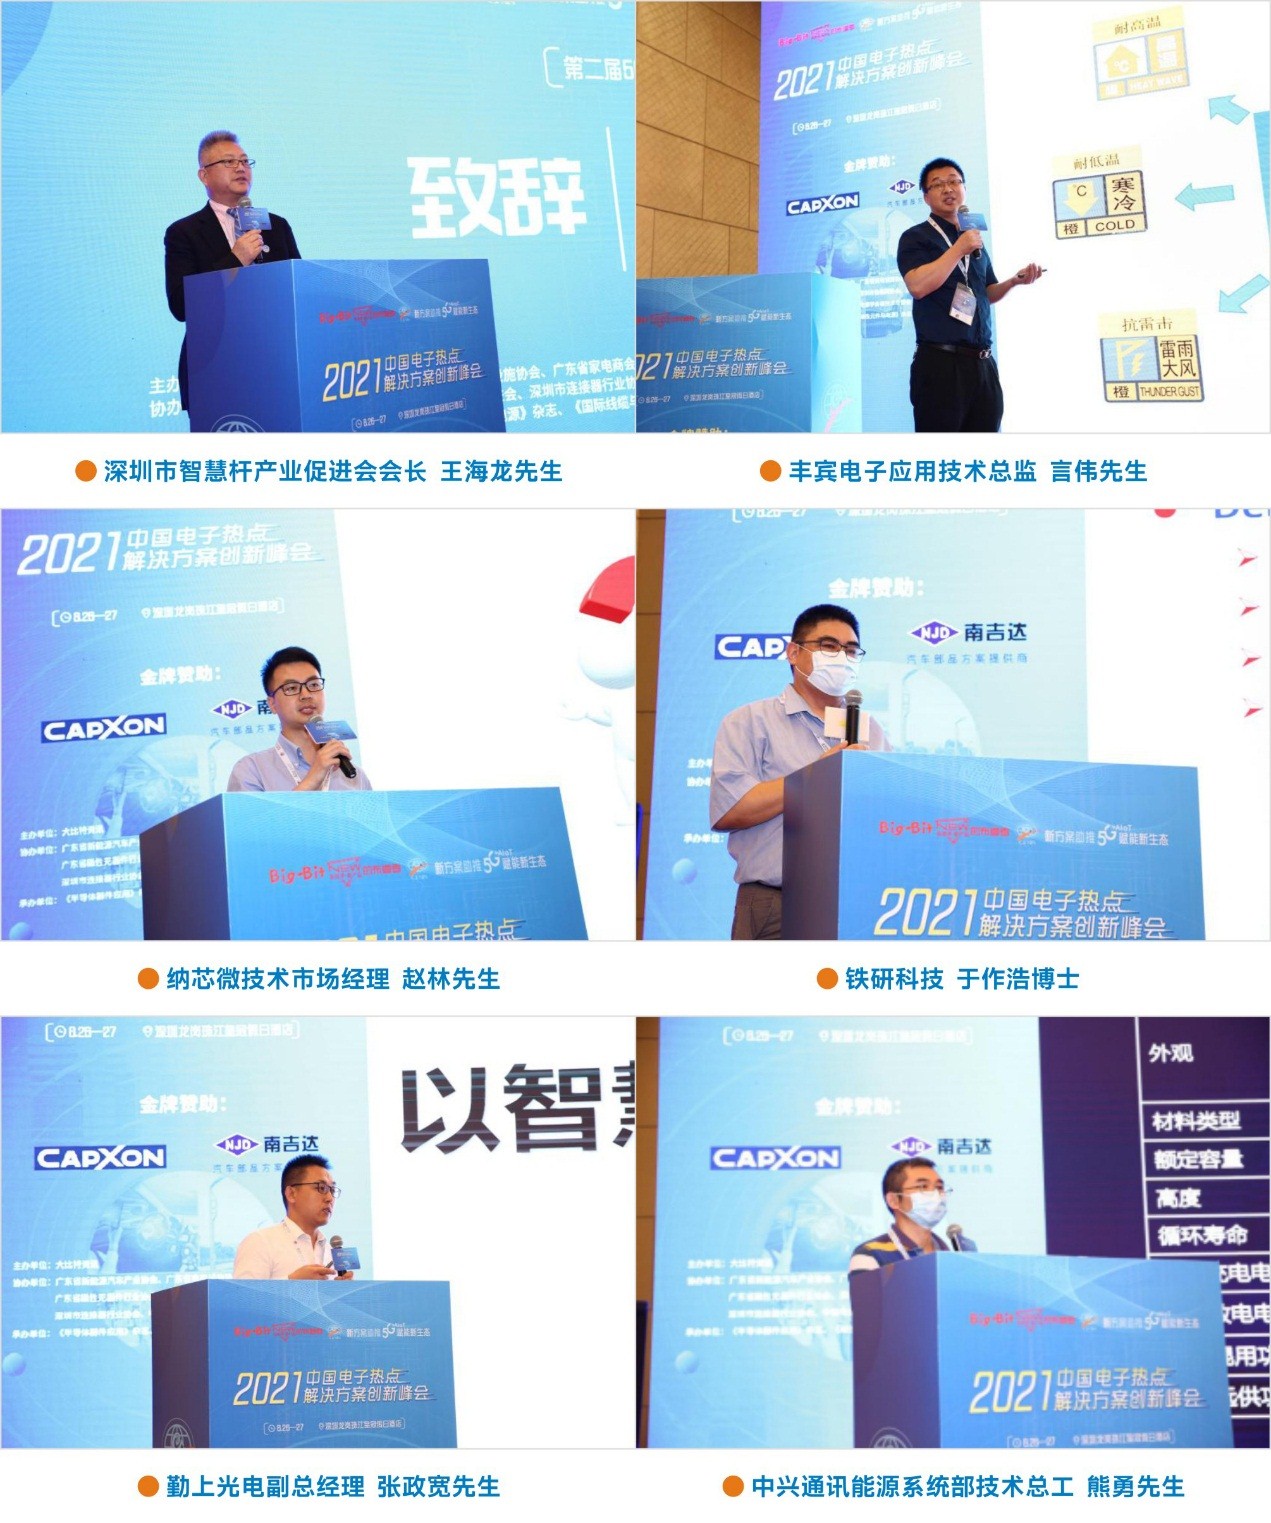 第二屆(深圳)5G基站電源與智慧燈桿技術研討會